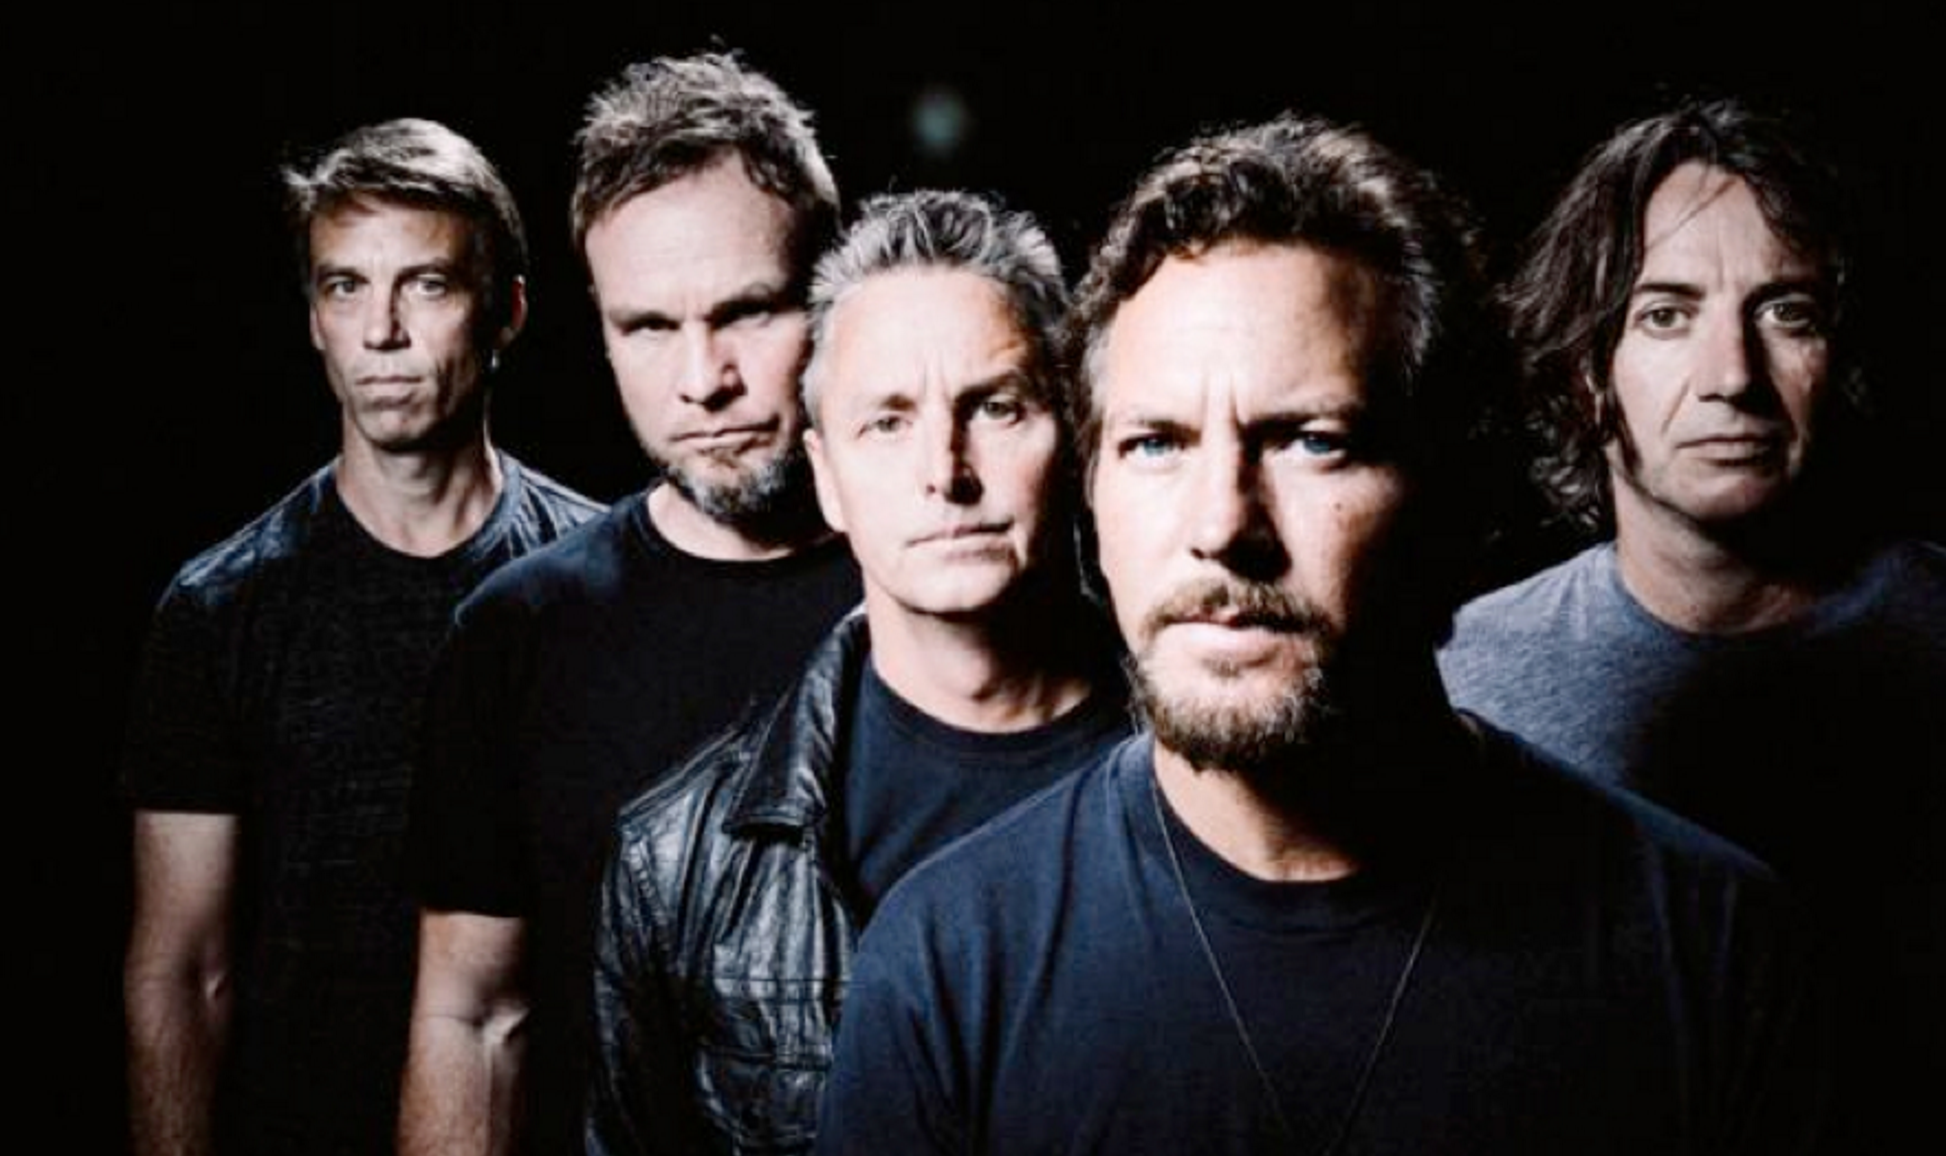 Pearl Jam interpreta “Angel” por primera vez en 22 años